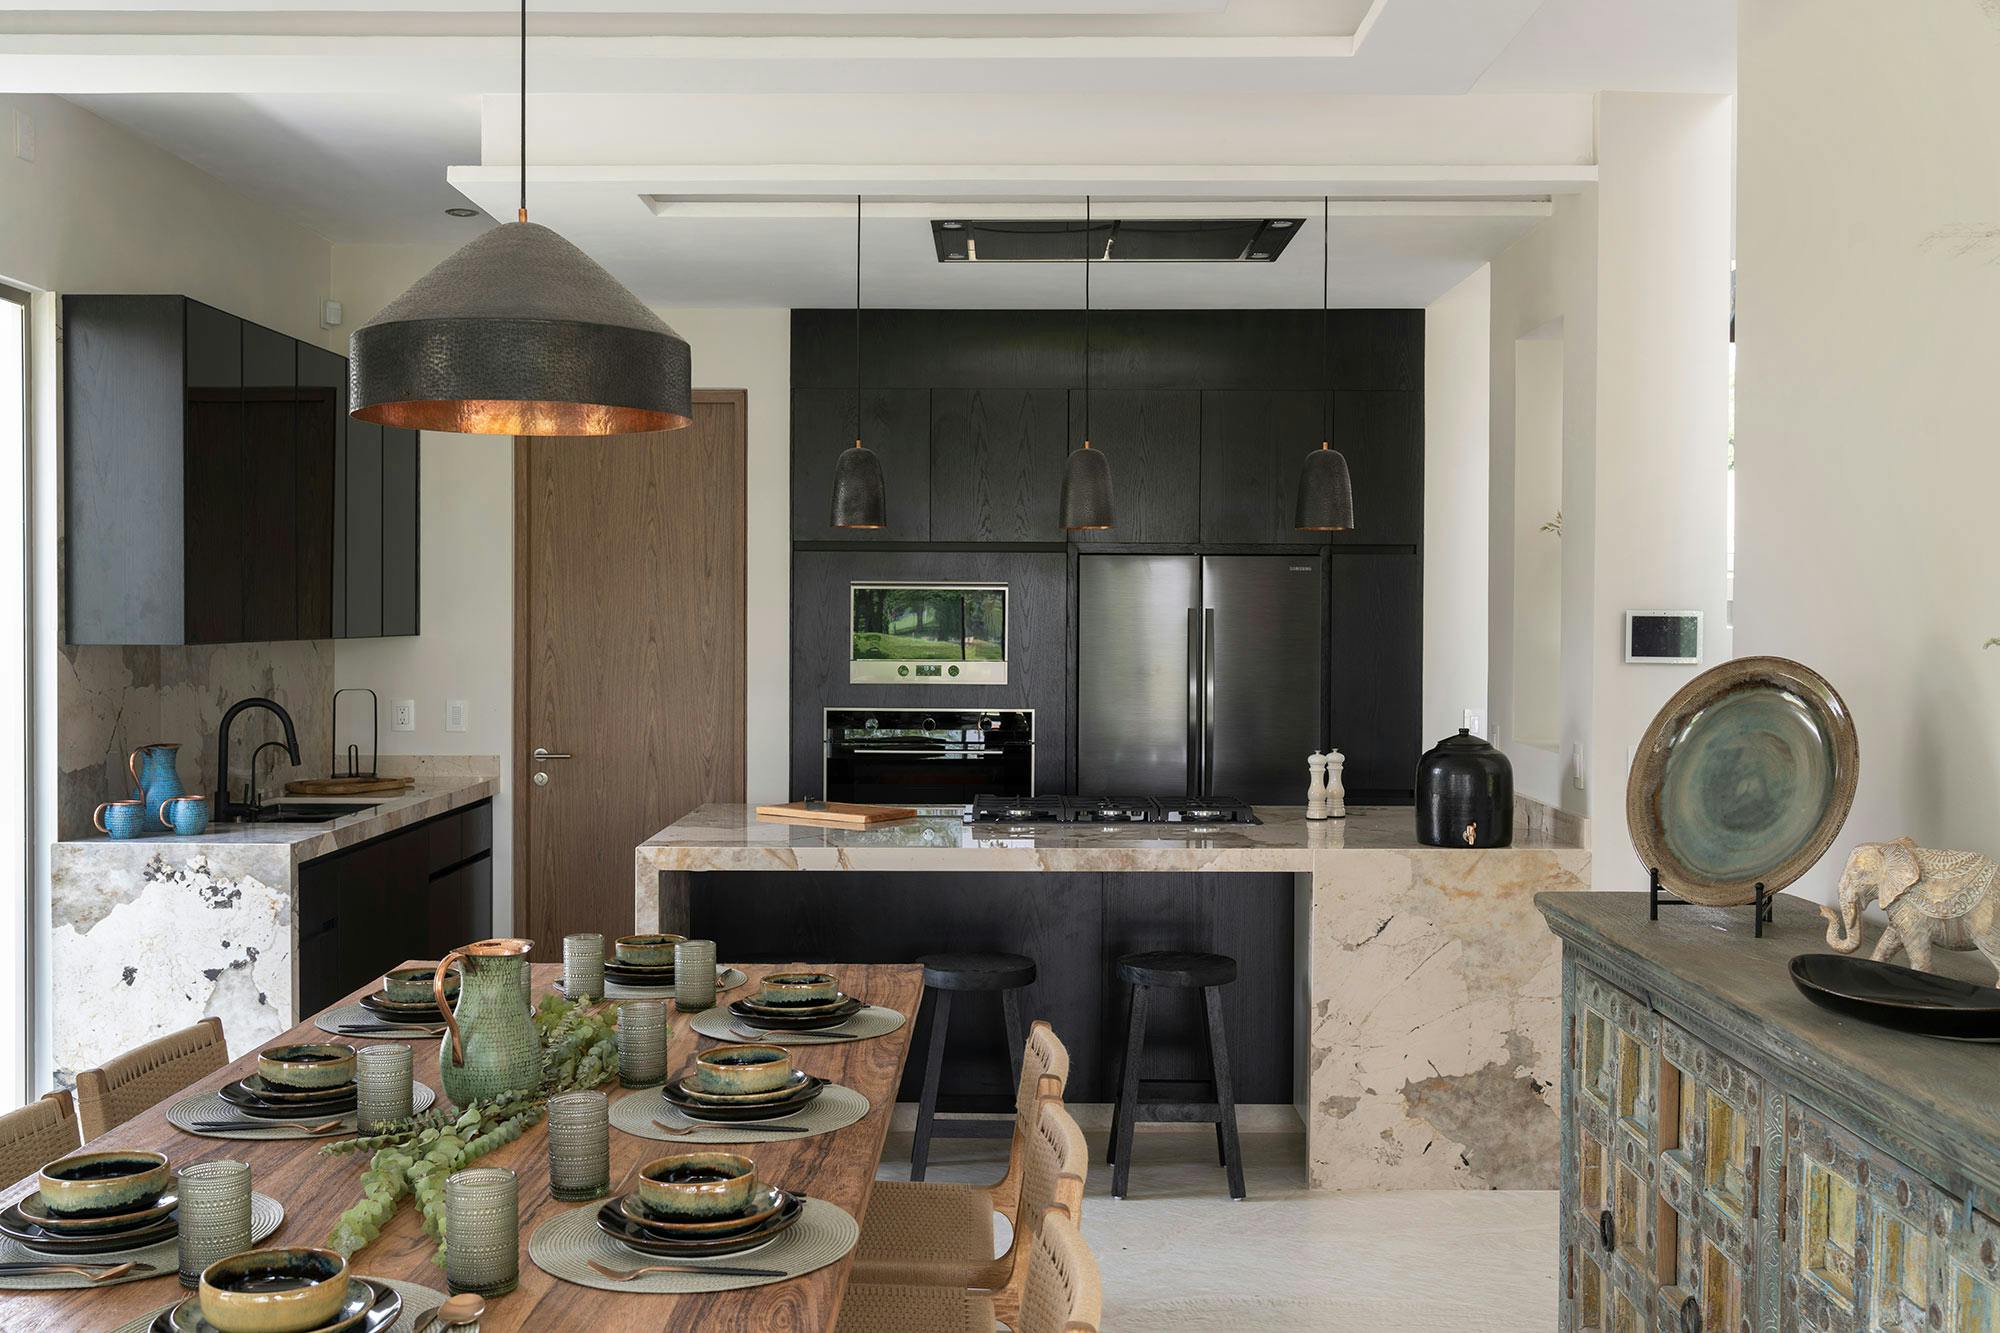 Bildnummer 36 des aktuellen Abschnitts von DKTN Sirius adds a welcoming touch to the kitchens of a residential development in Dubai von Cosentino Deutschland